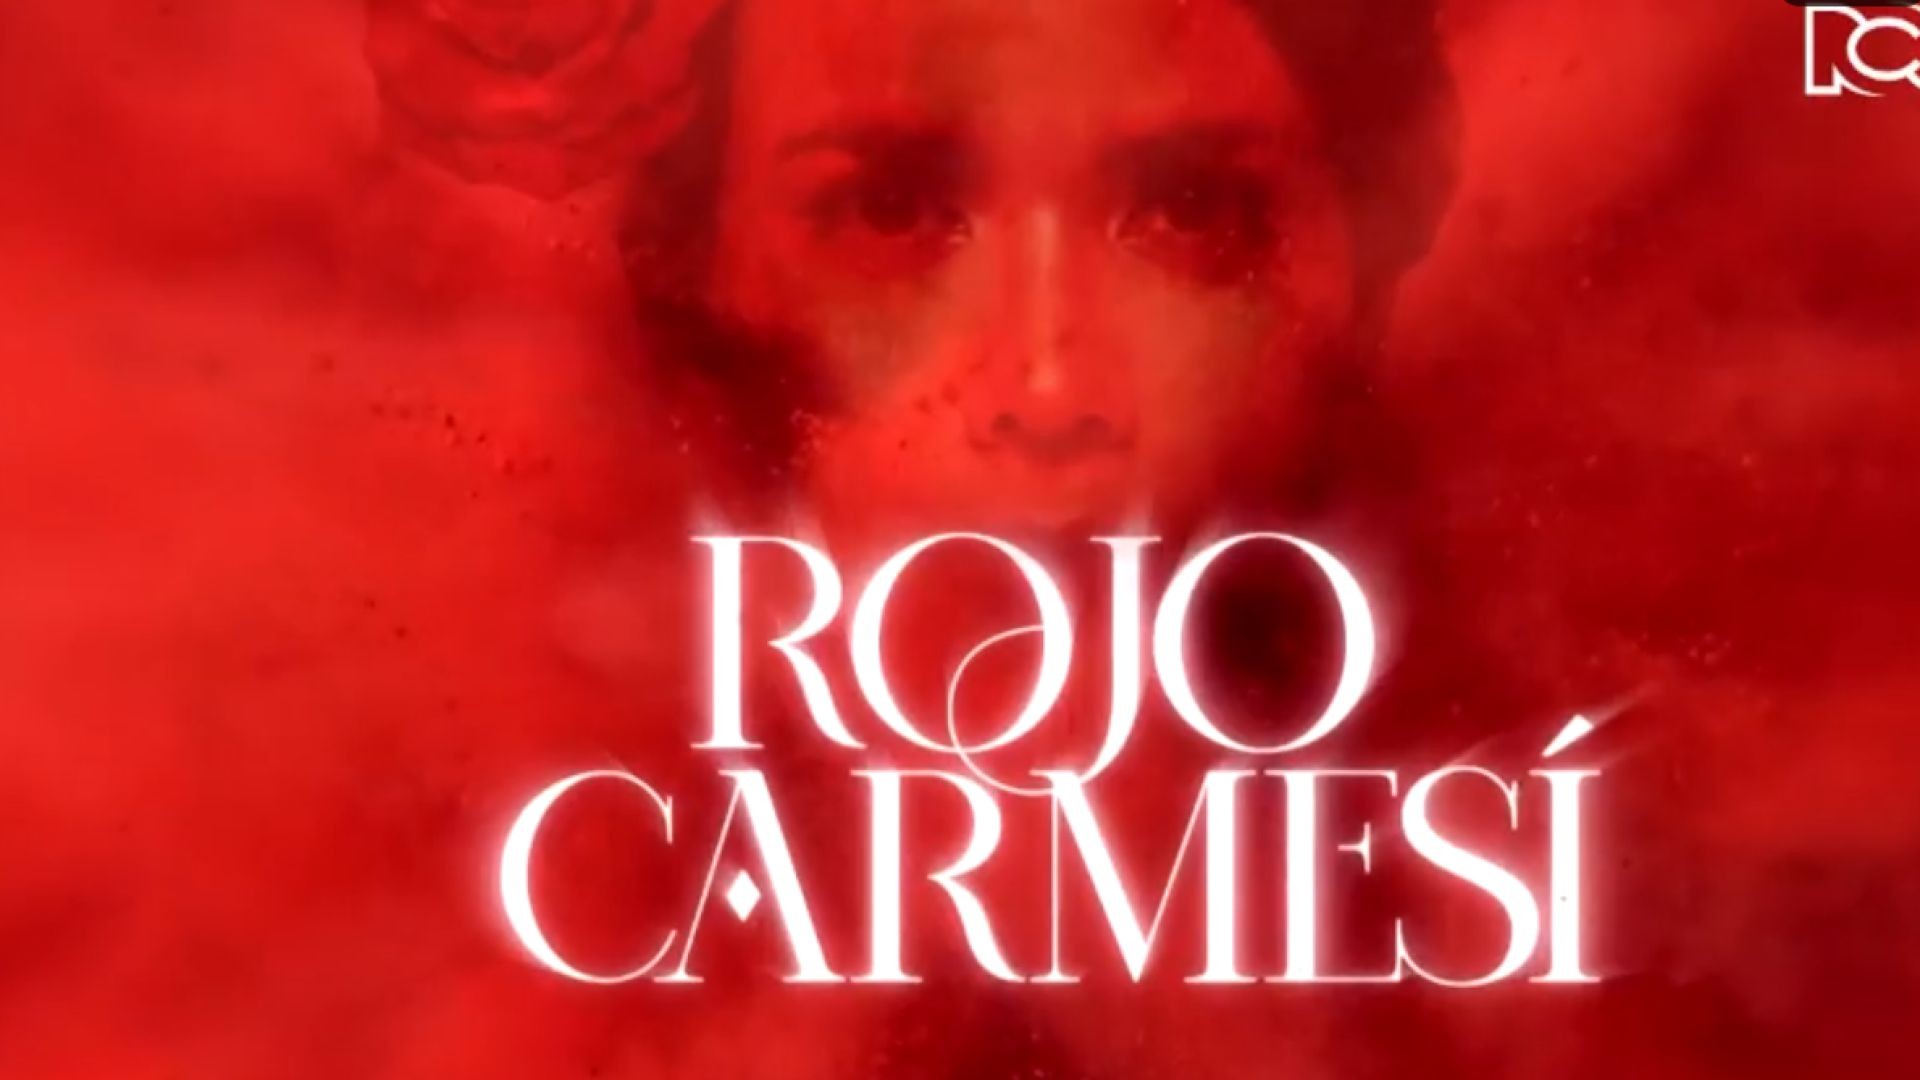 Rojo Carmesí Capitulo 3 Completo - Rojo Carmesí telenovela